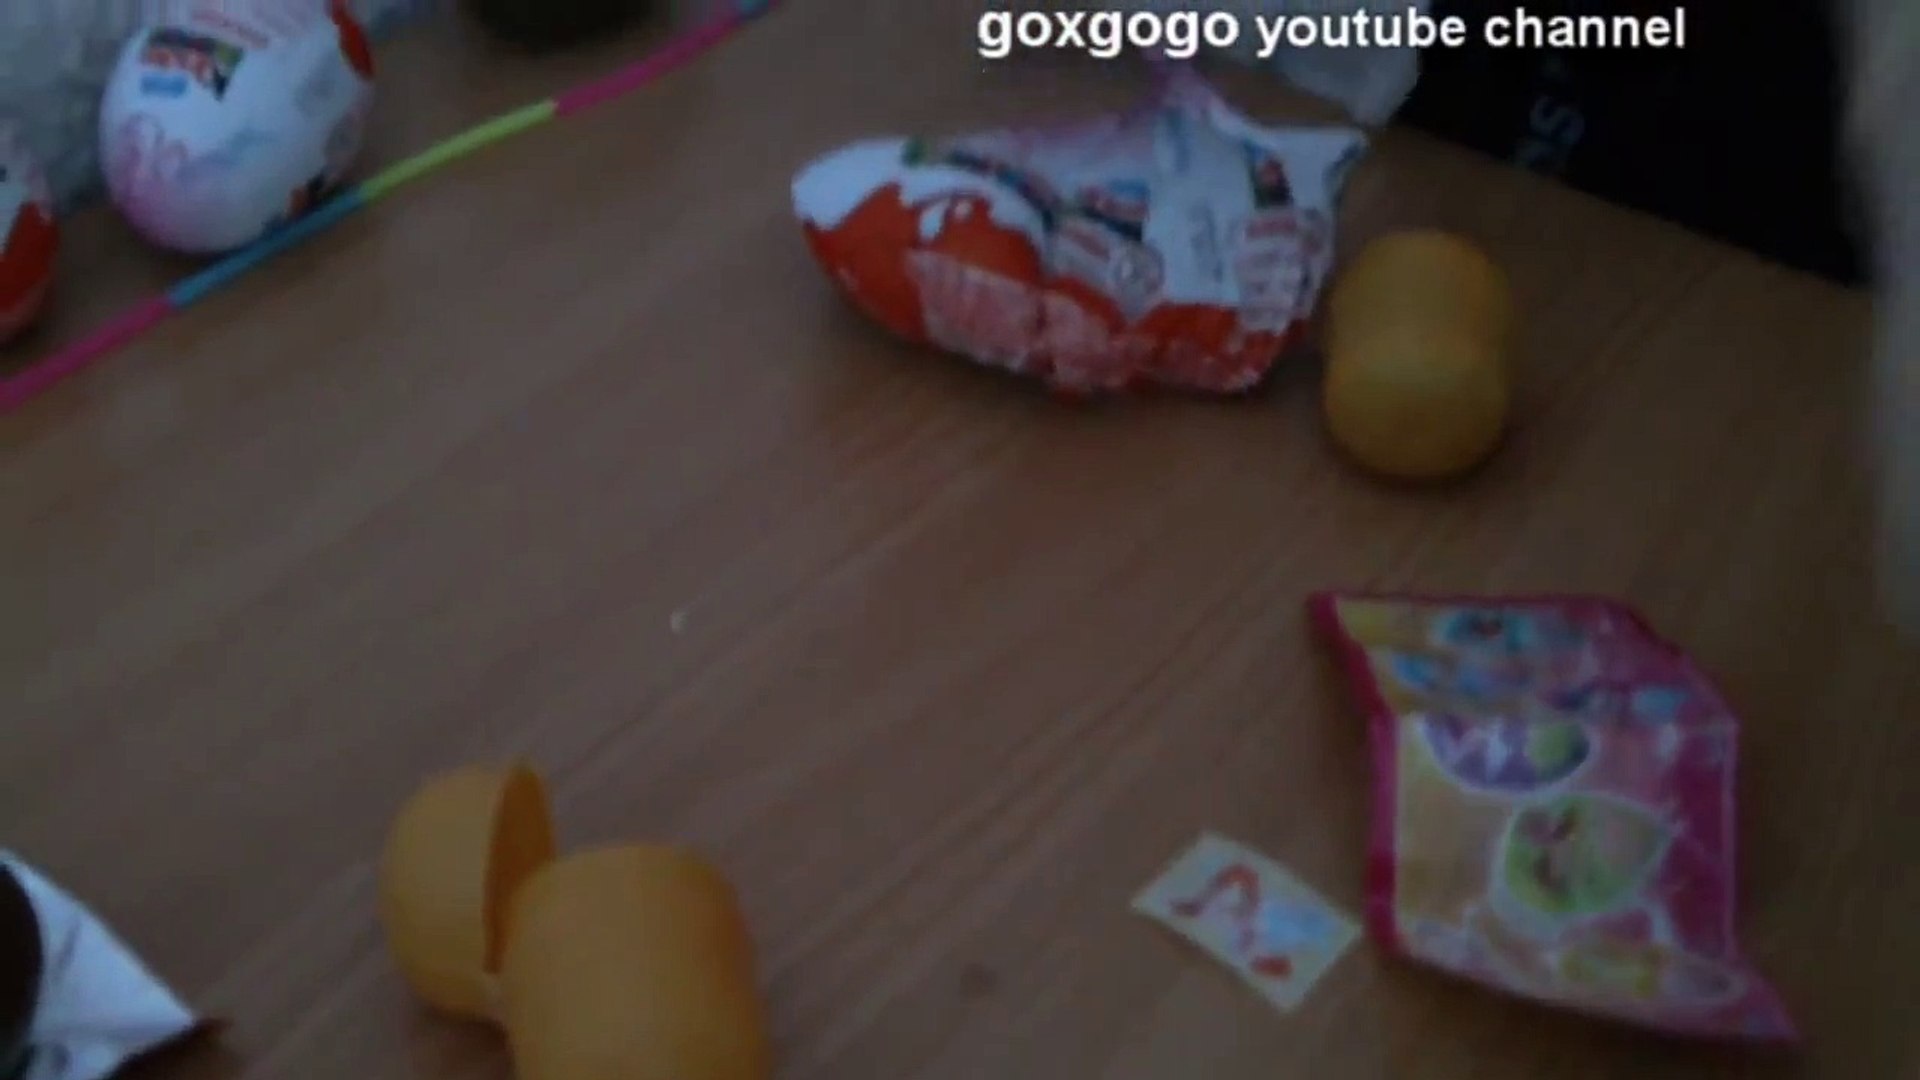 ⁣Unboxing 5 Kinder Suprise Eggs - Vinx Kinder Eggs